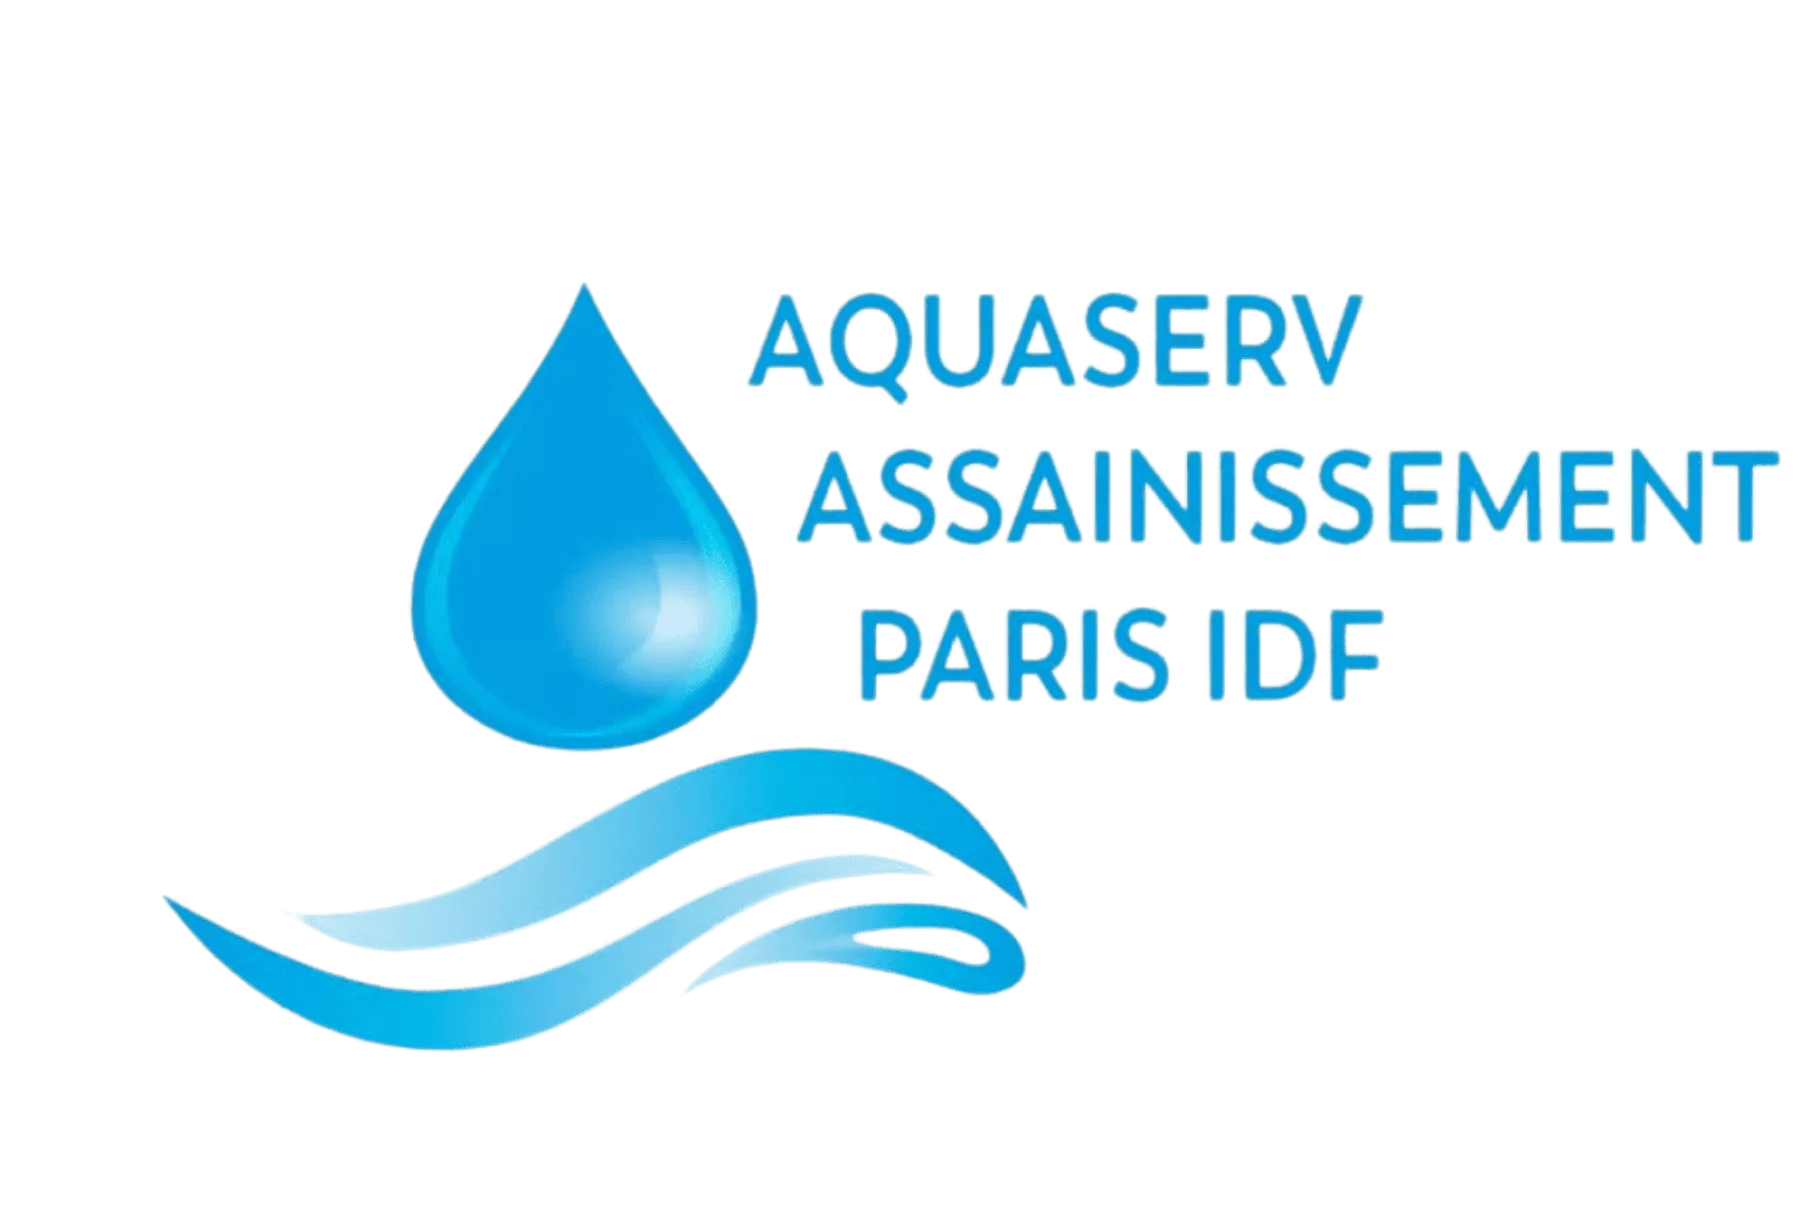 Aquaserv Assainissement Paris IDFaincus que v